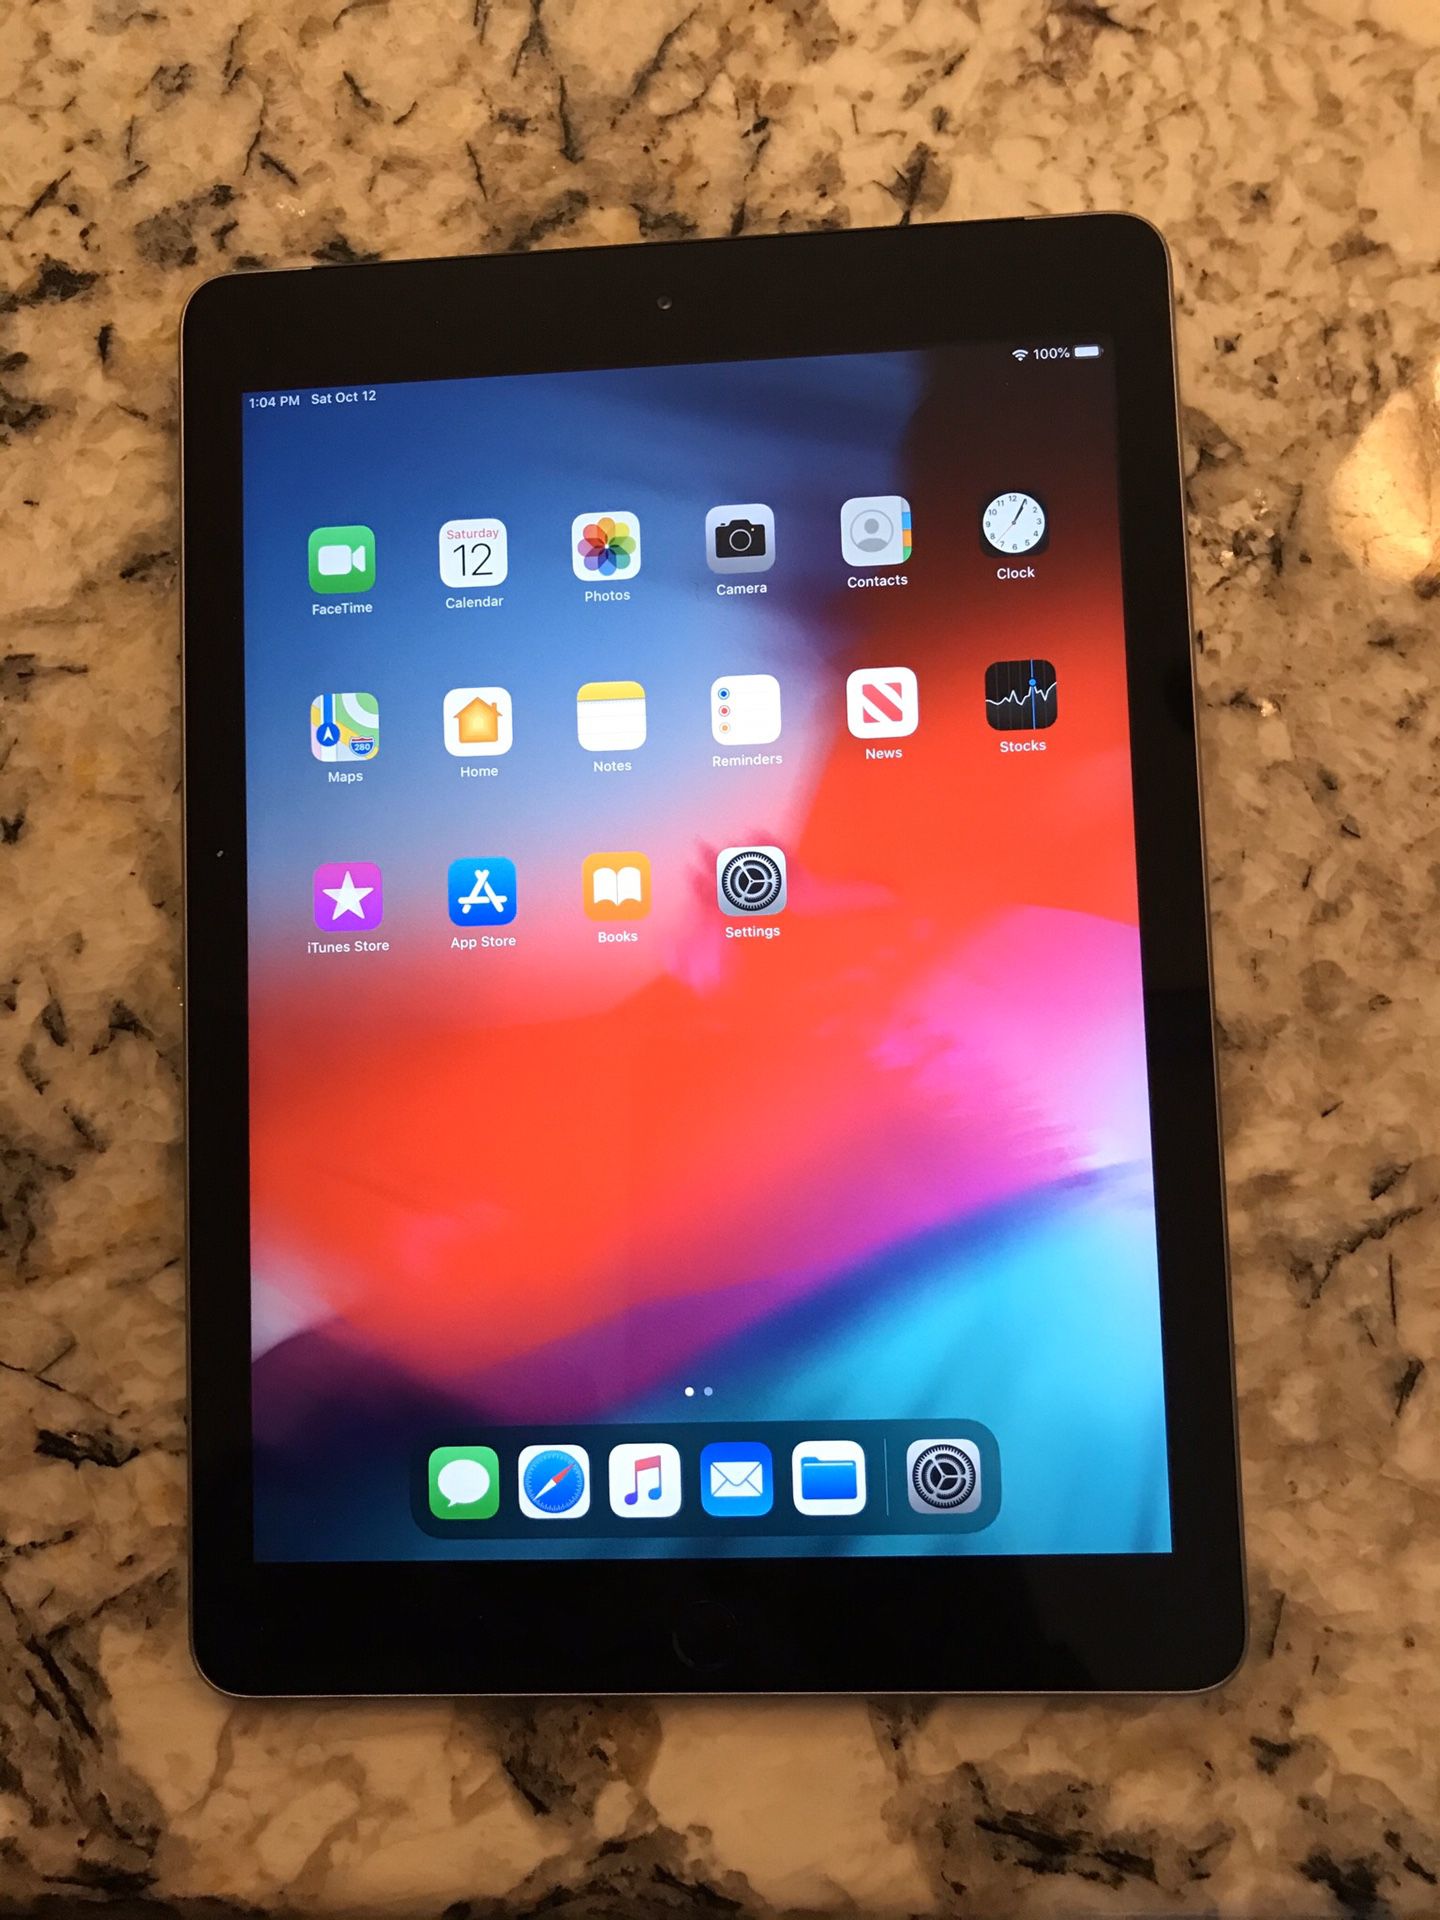 iPad 5th Generation 2017 32GB (unlocked) 9.7" Display, Wi-Fi + cellular